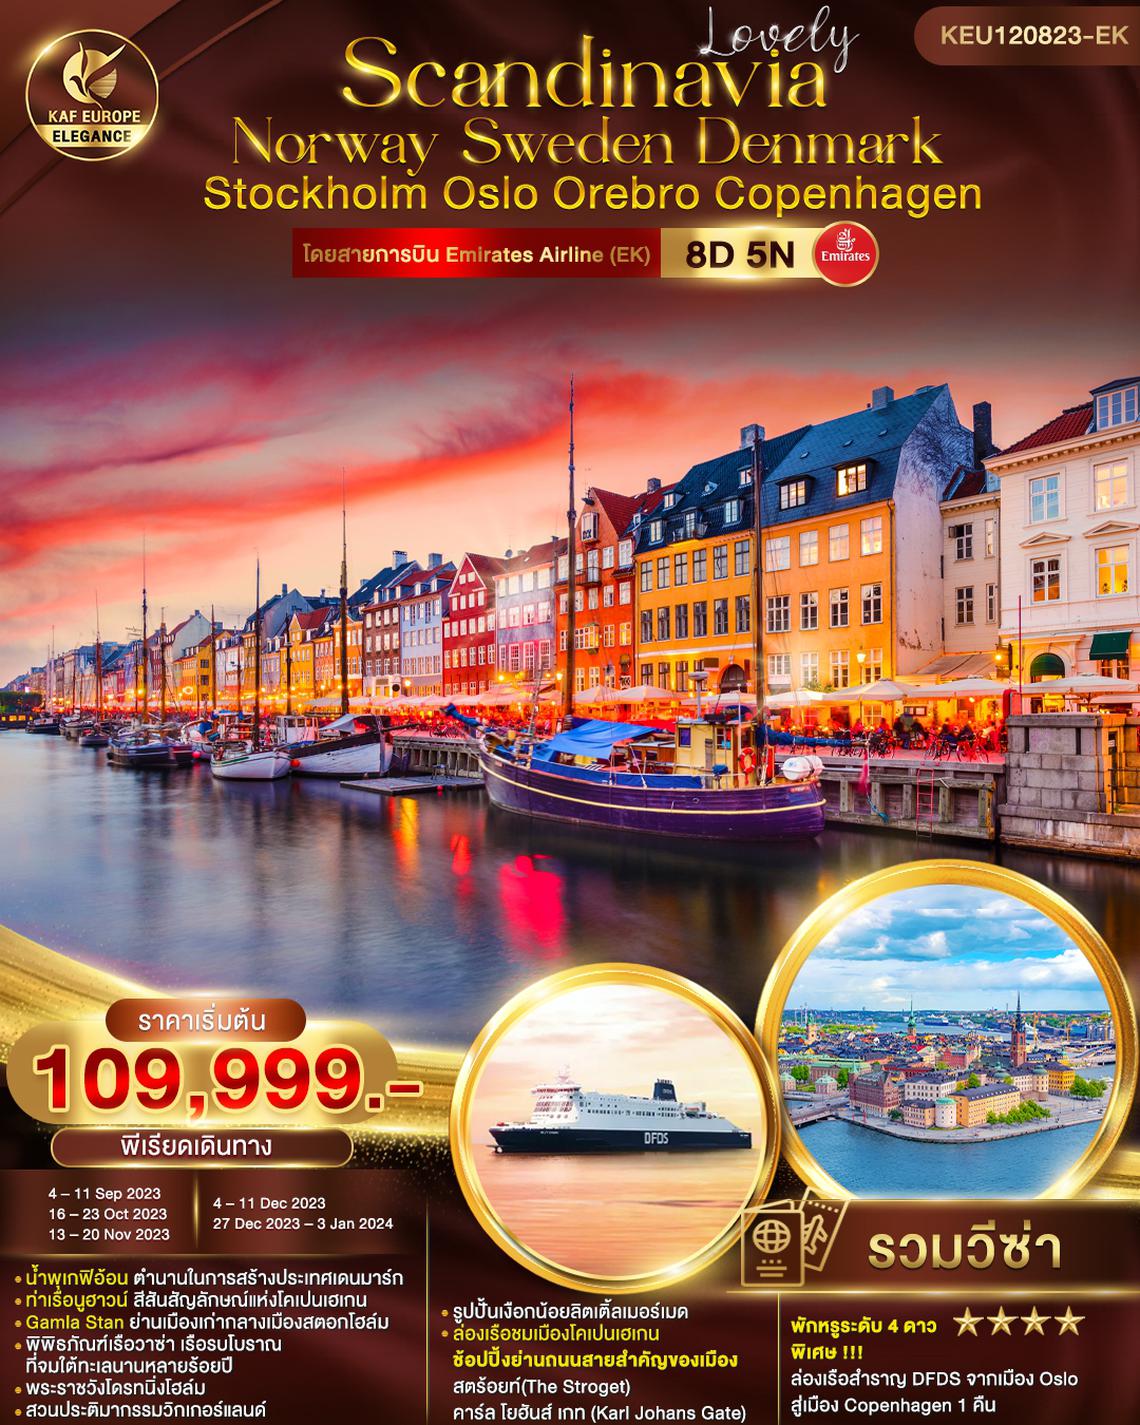 ทัวร์ยุโรป LOVELY SCANDINAVIA NORWAY SWEDEN DENMARK STOCKHOLM OSLO OREBRO COPENHAGEN 8D 5N